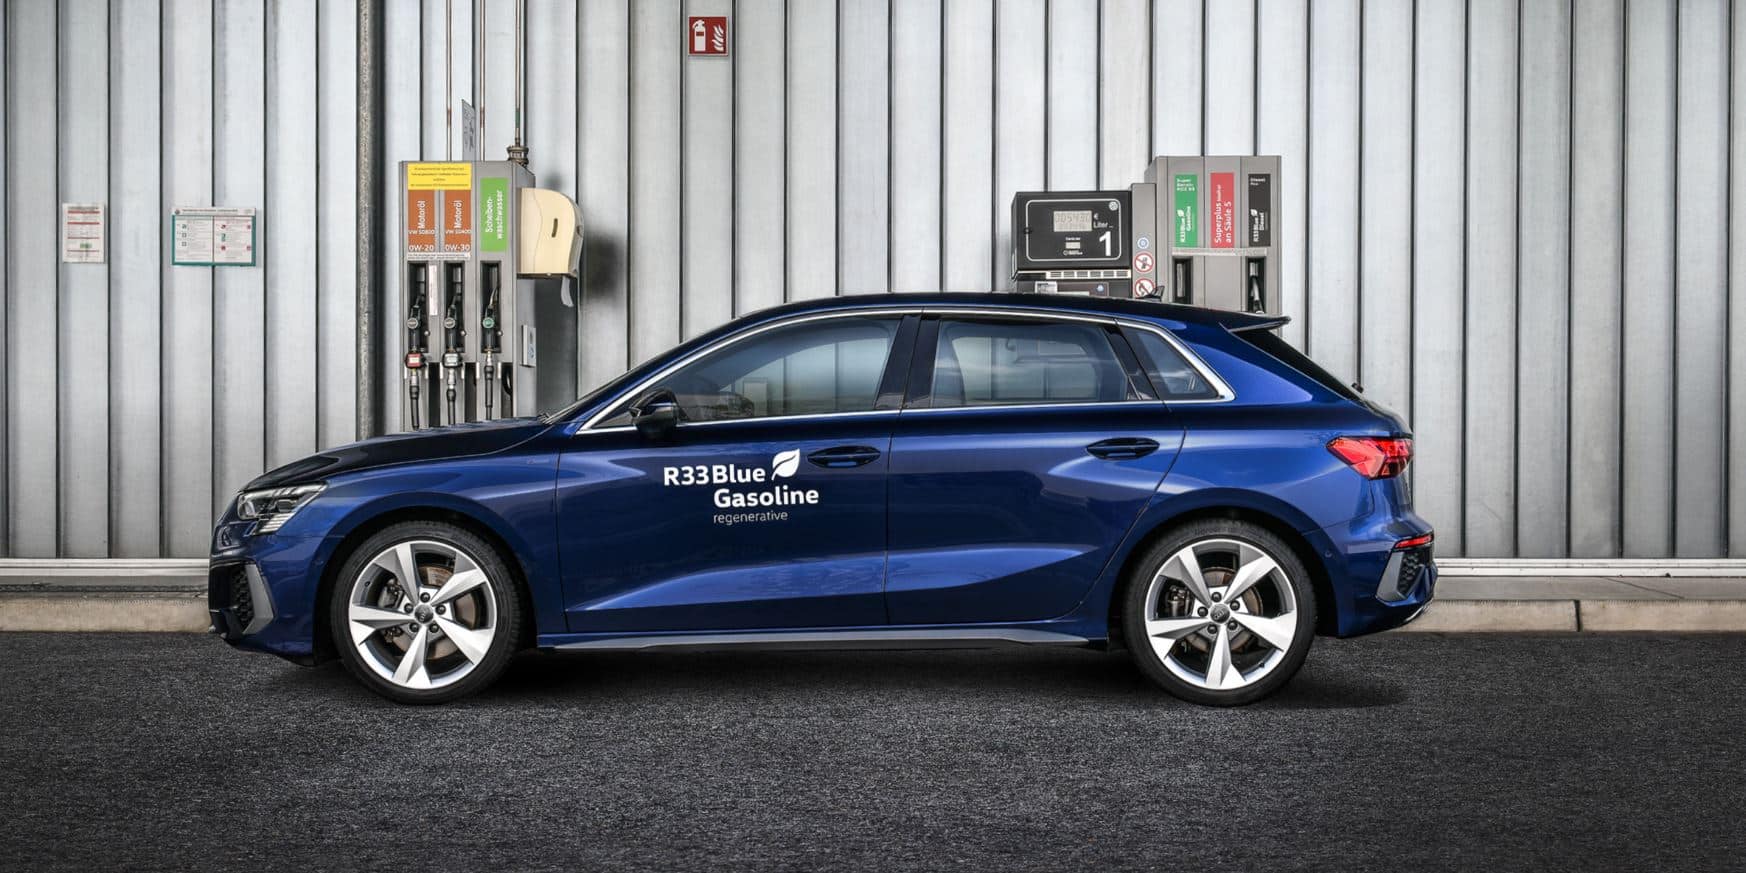 ¿Qué es el combustible R33 que usa Audi en sus coches nuevos cuando los entrega?